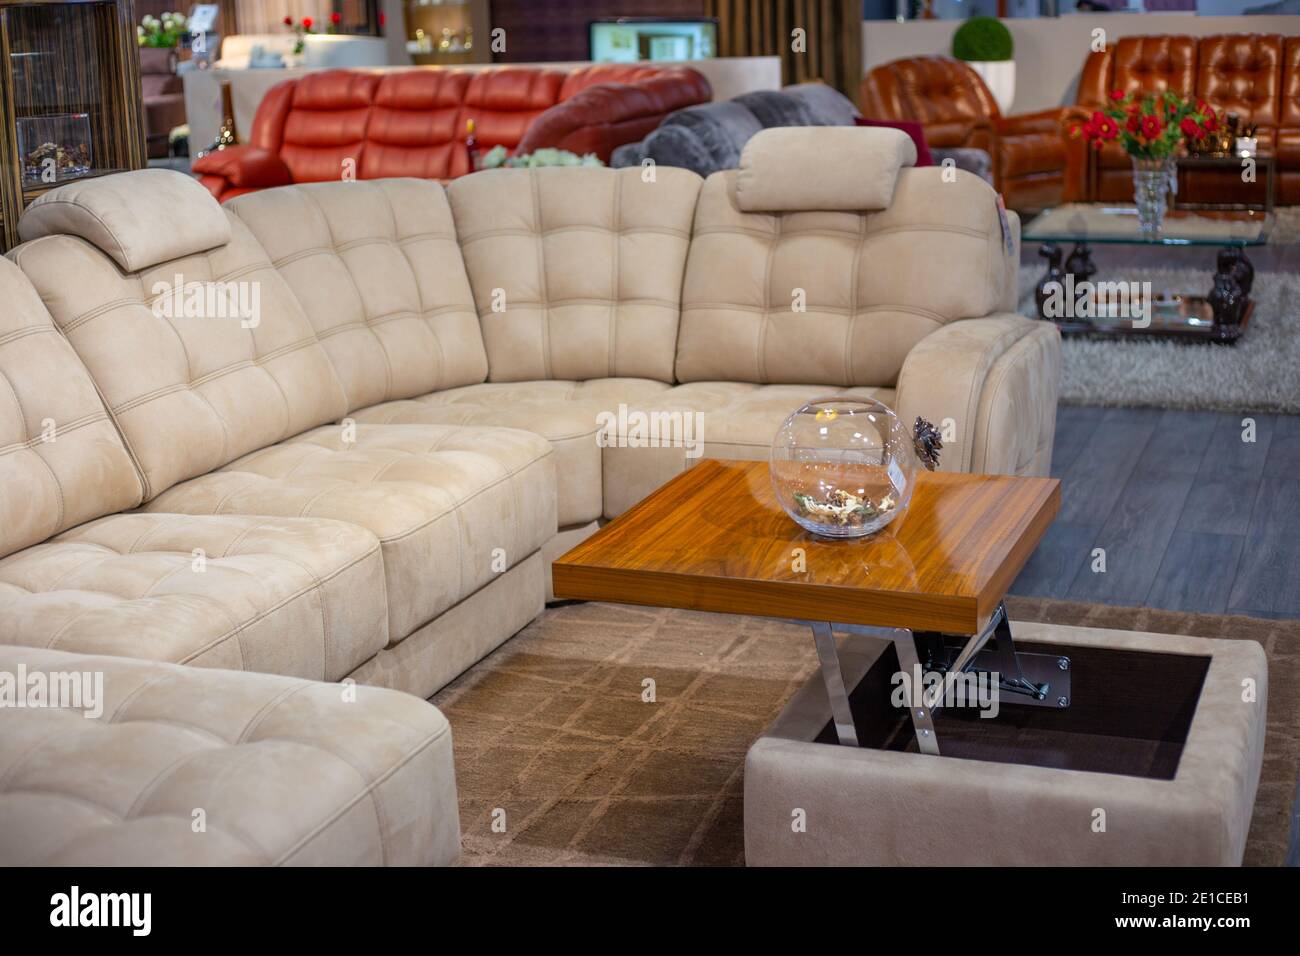 L'intérieur de la pièce. Grand canapé beige avec coutures, canapé-table avec vase. Magasin de meubles. Banque D'Images